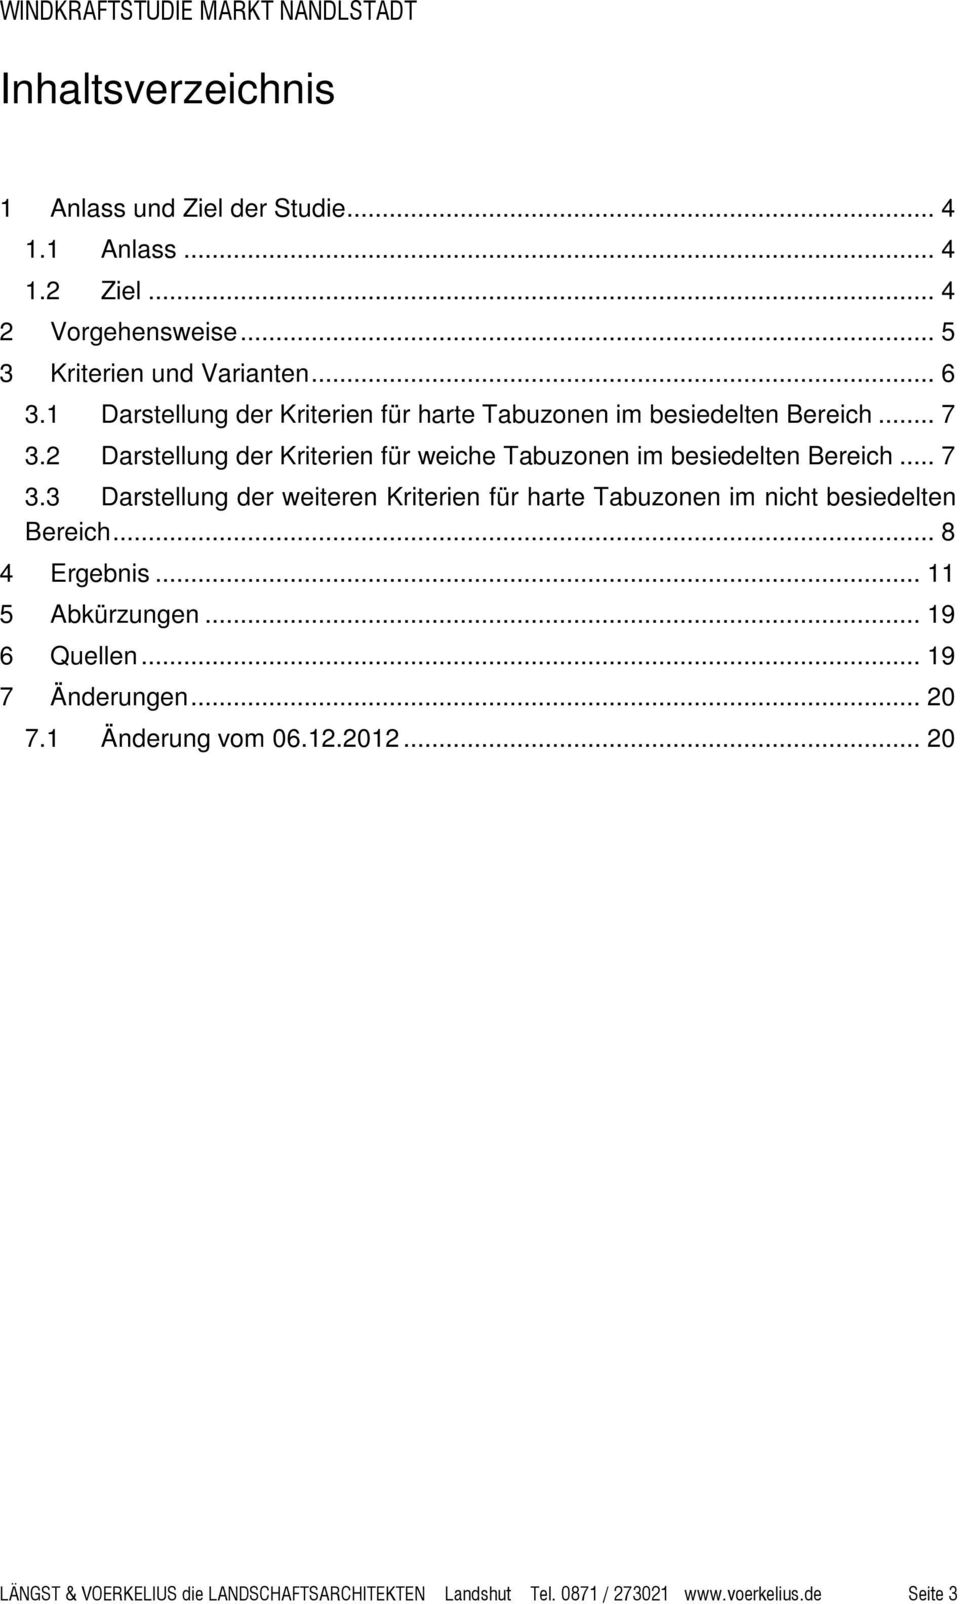 2 Darstellung der Kriterien für weiche Tabuzonen im besiedelten Bereich... 7 3.